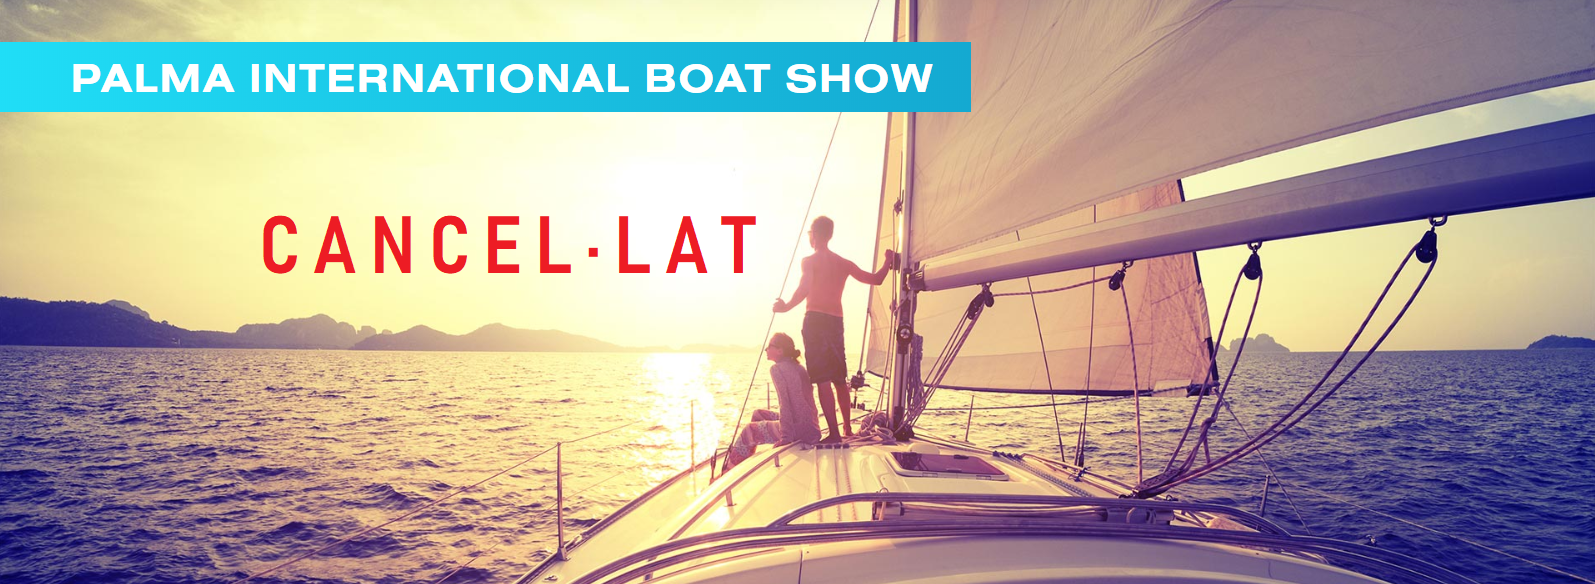 Cancel·lada l’edició del 2020 del Palma International Boat Show